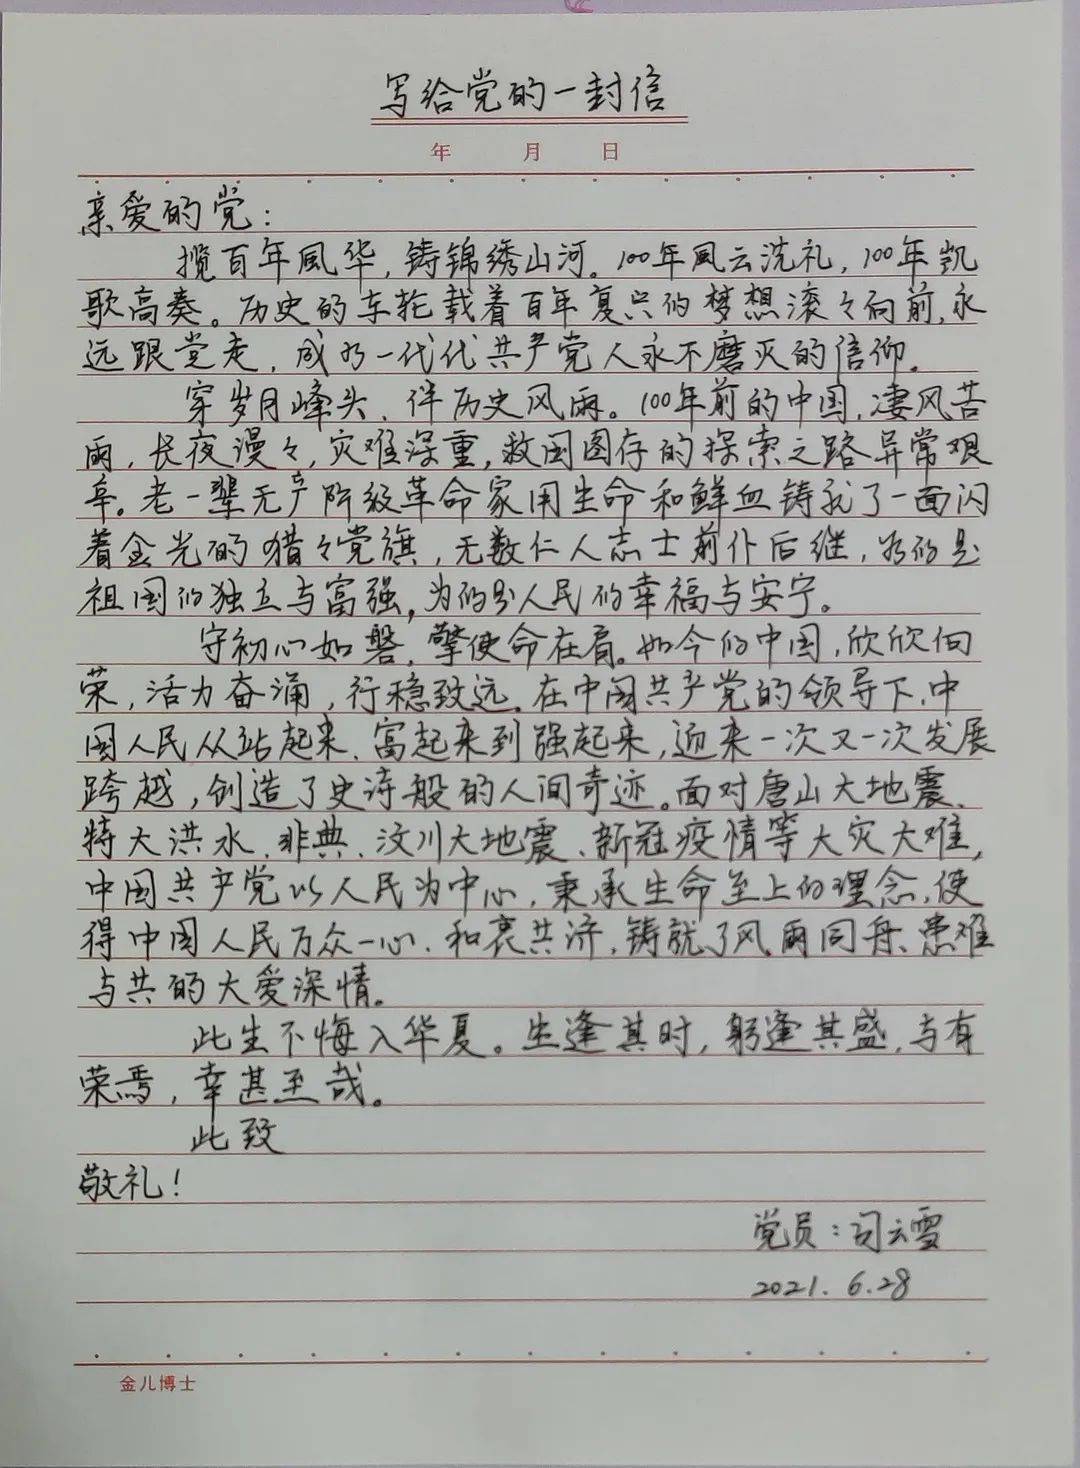 笔尖凝赤诚 书信庆华诞——第三技术部开展"写给党的一封信"活动